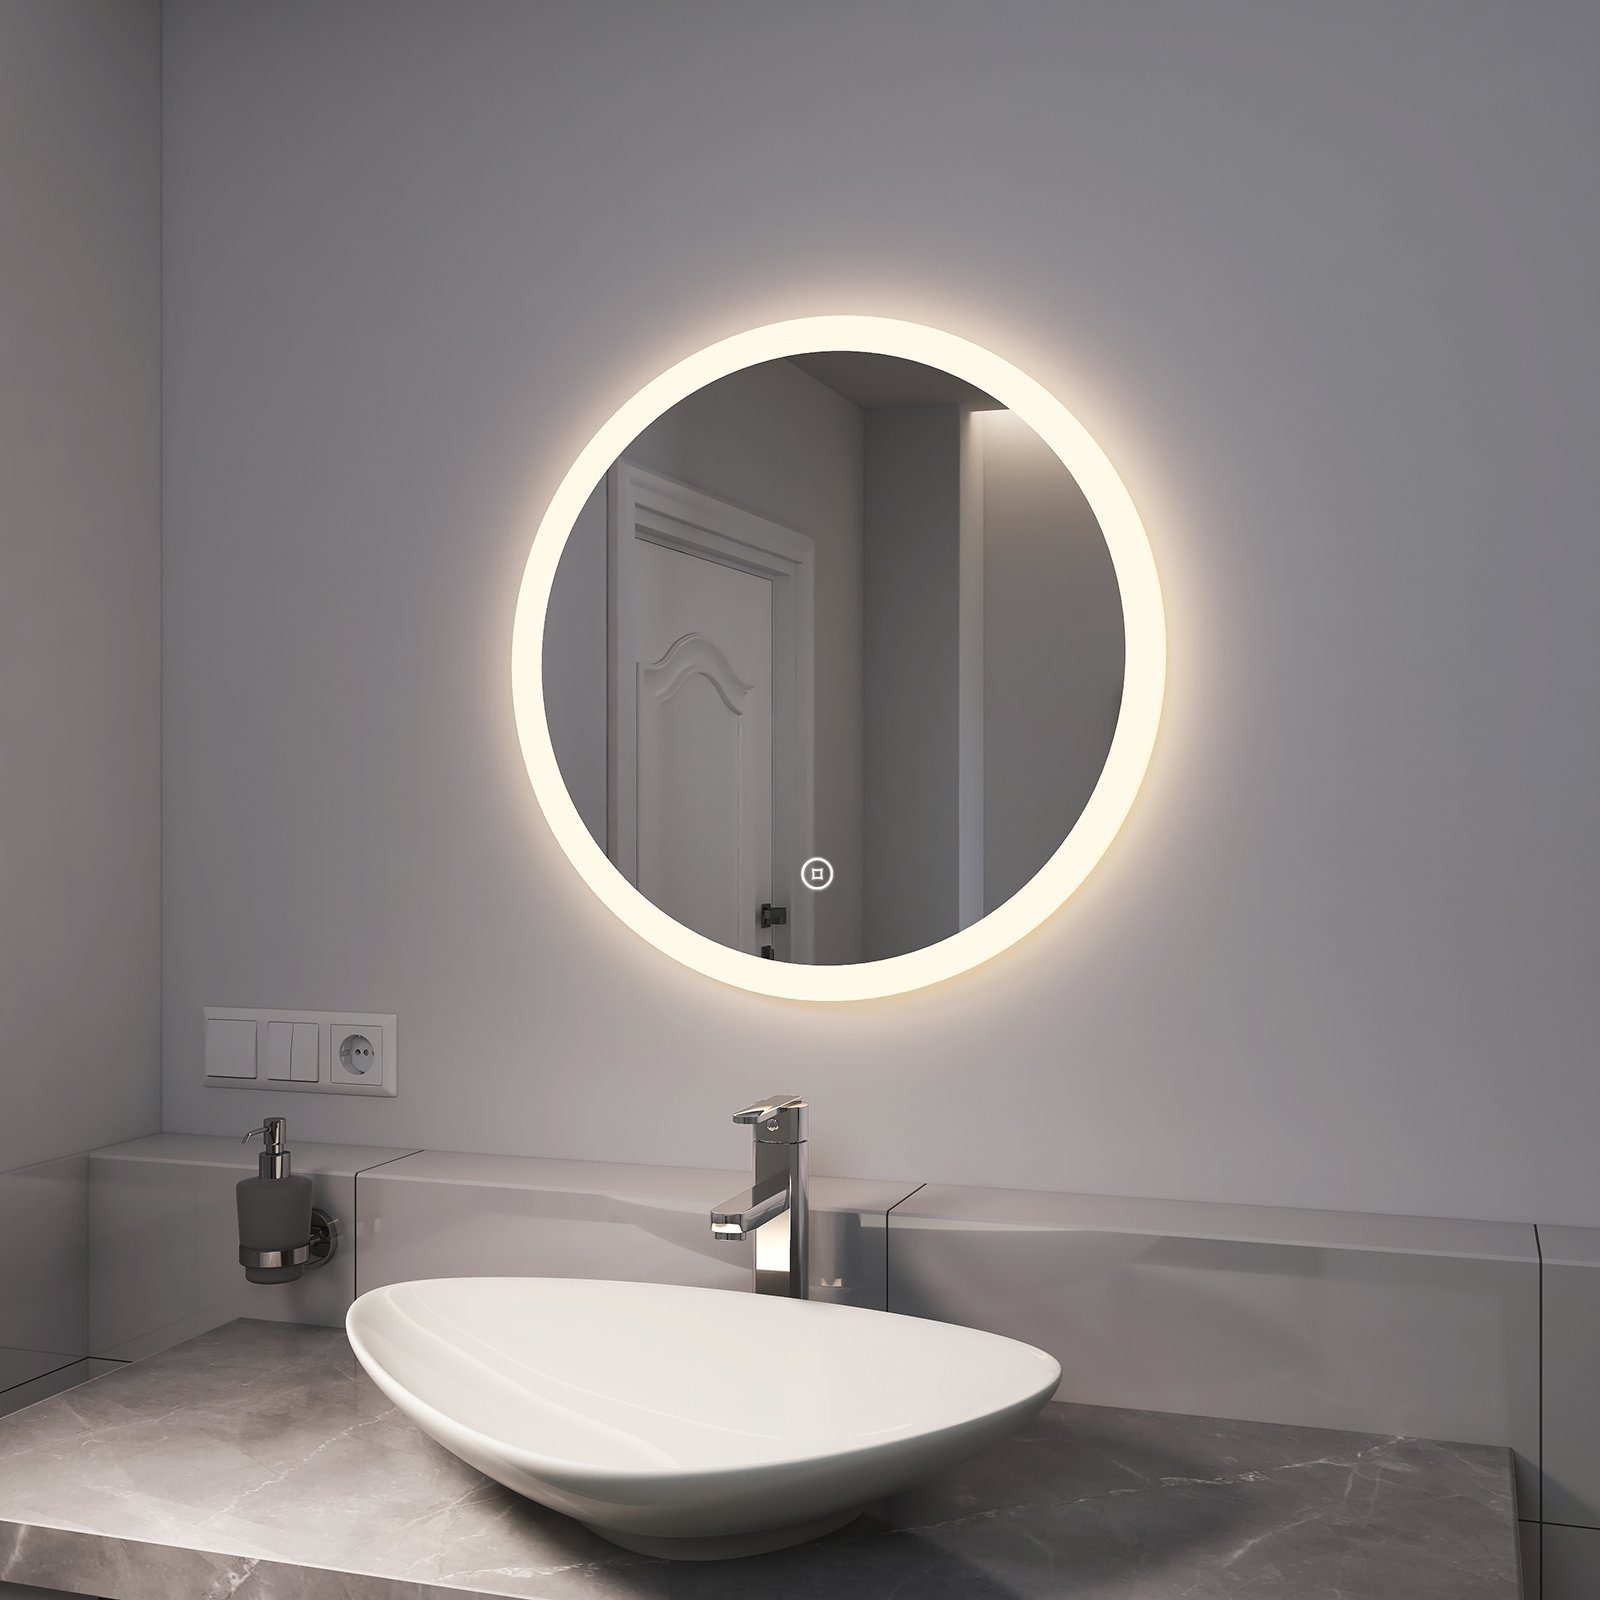 EMKE Badspiegel EMKE Touch-Schalter mit Runder Badspiegel Beleuchtung Wandspiegel Badezimmerspiegel, Lichtspiegel LED Wasserdicht mit